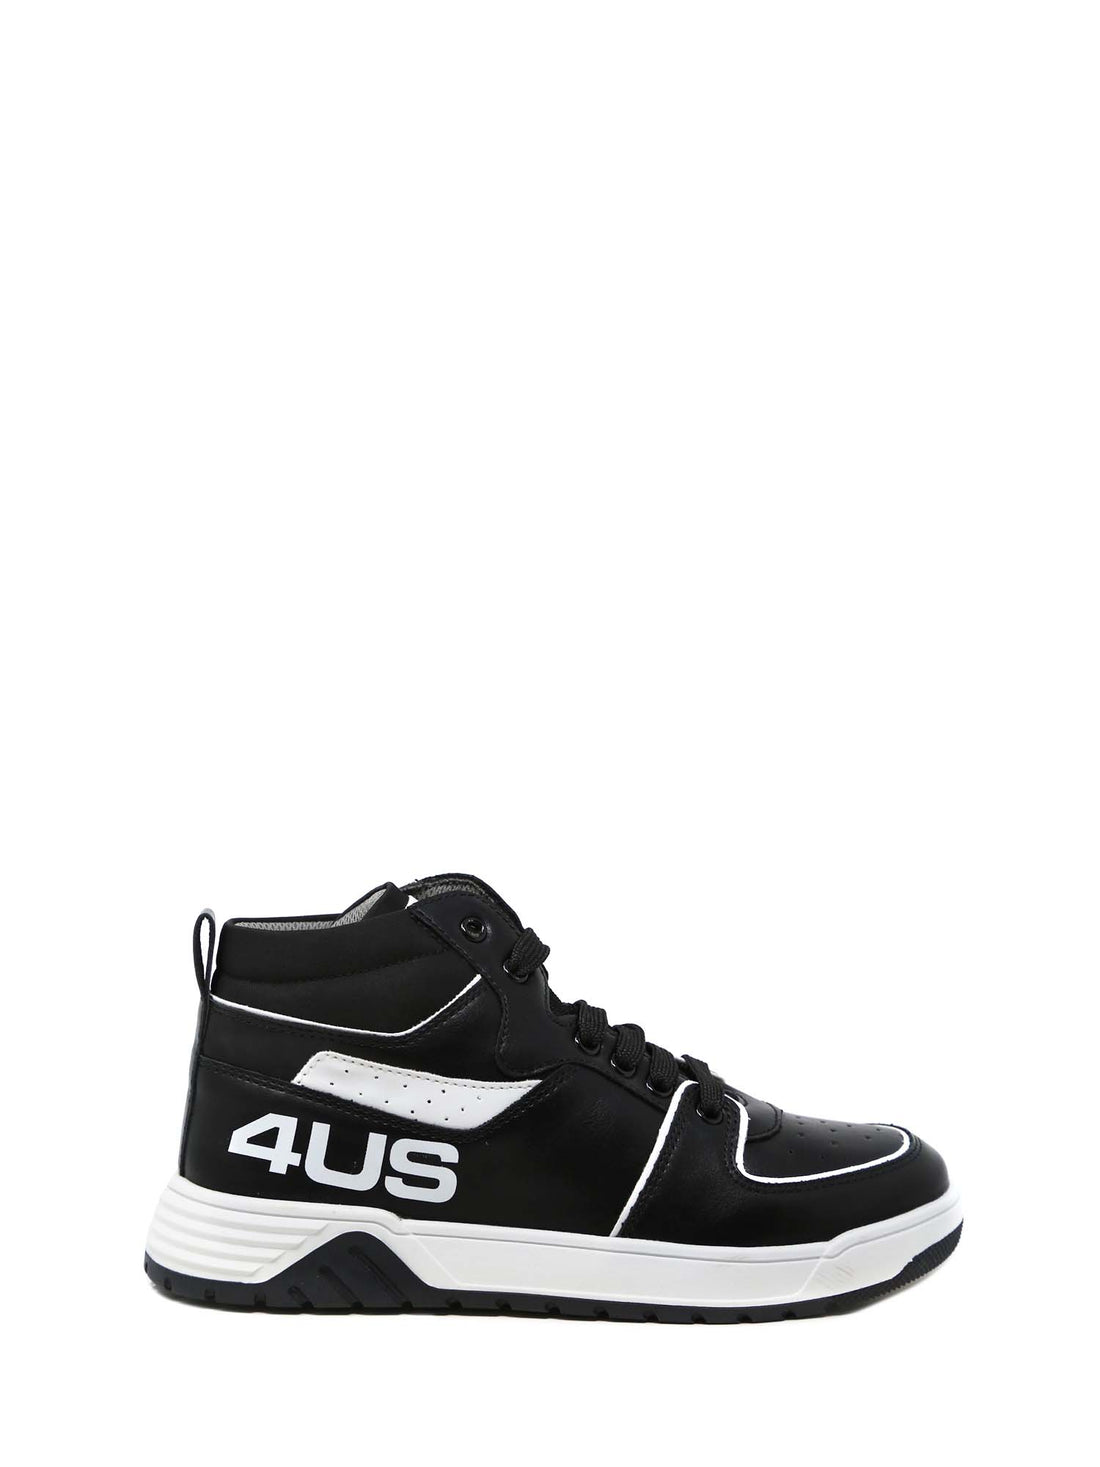 Sneakers Nero 4us